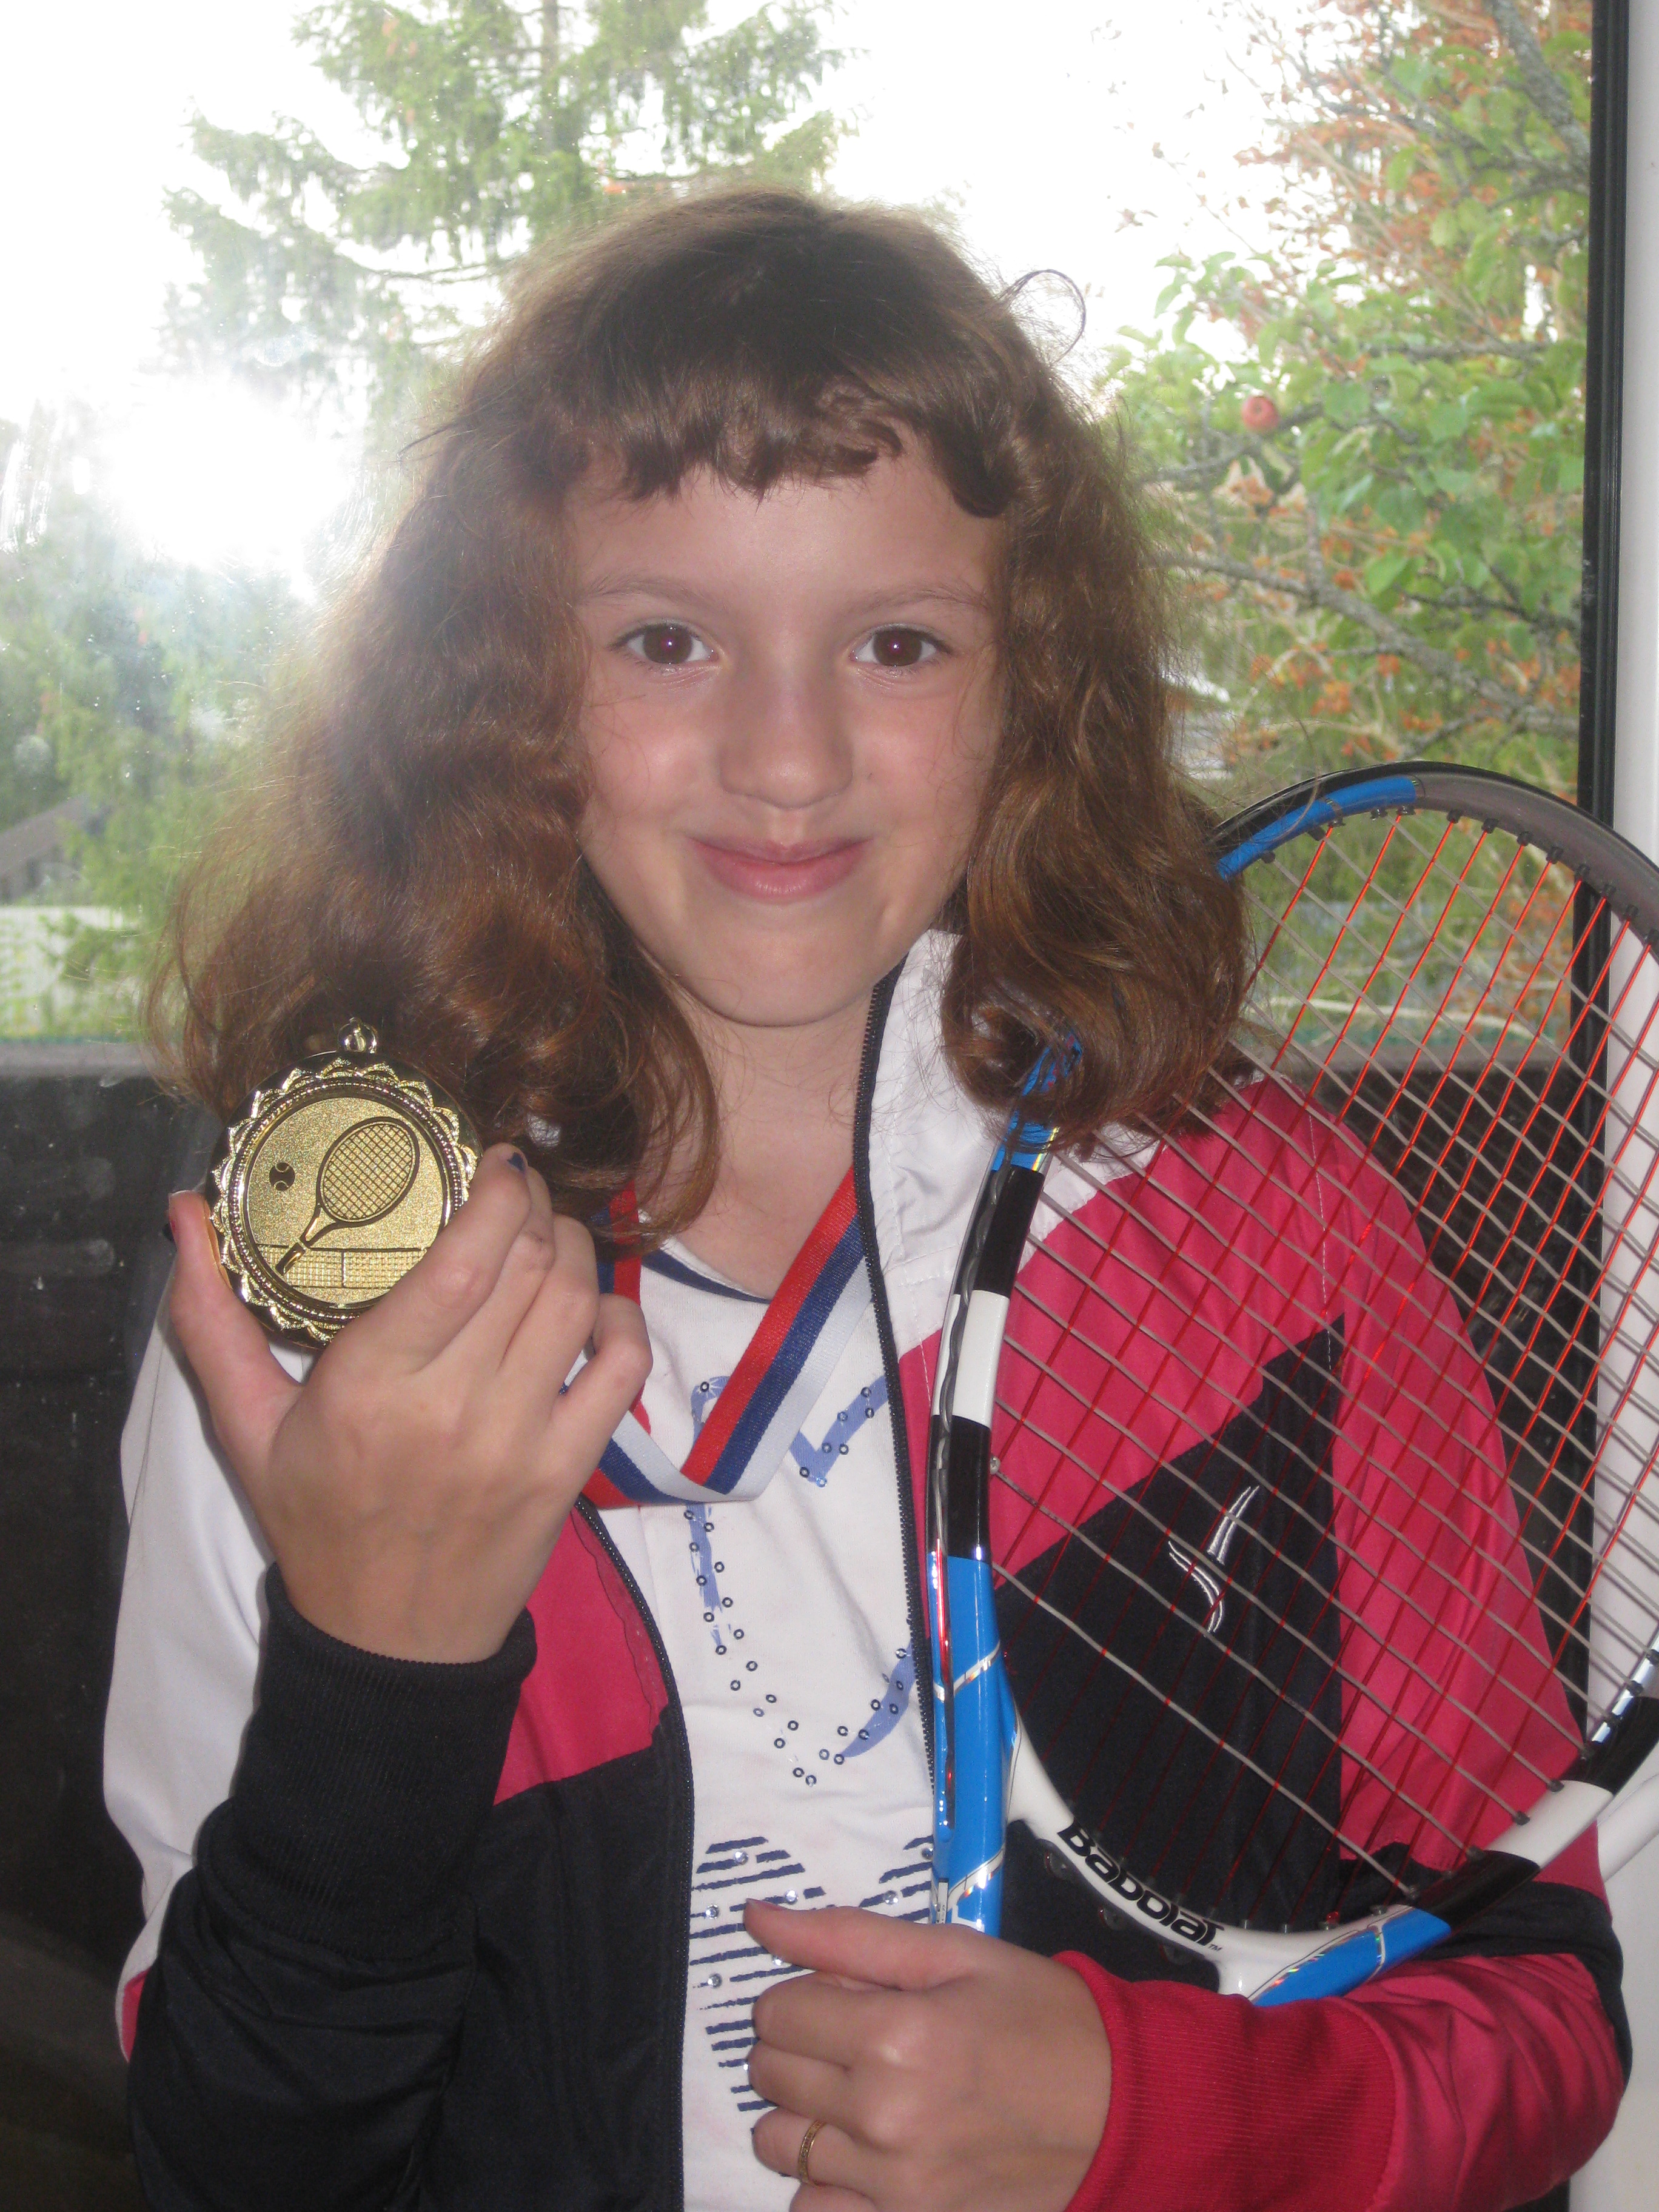 Теннисистка! Два выигранных турнира и три серебра до 13 лет.